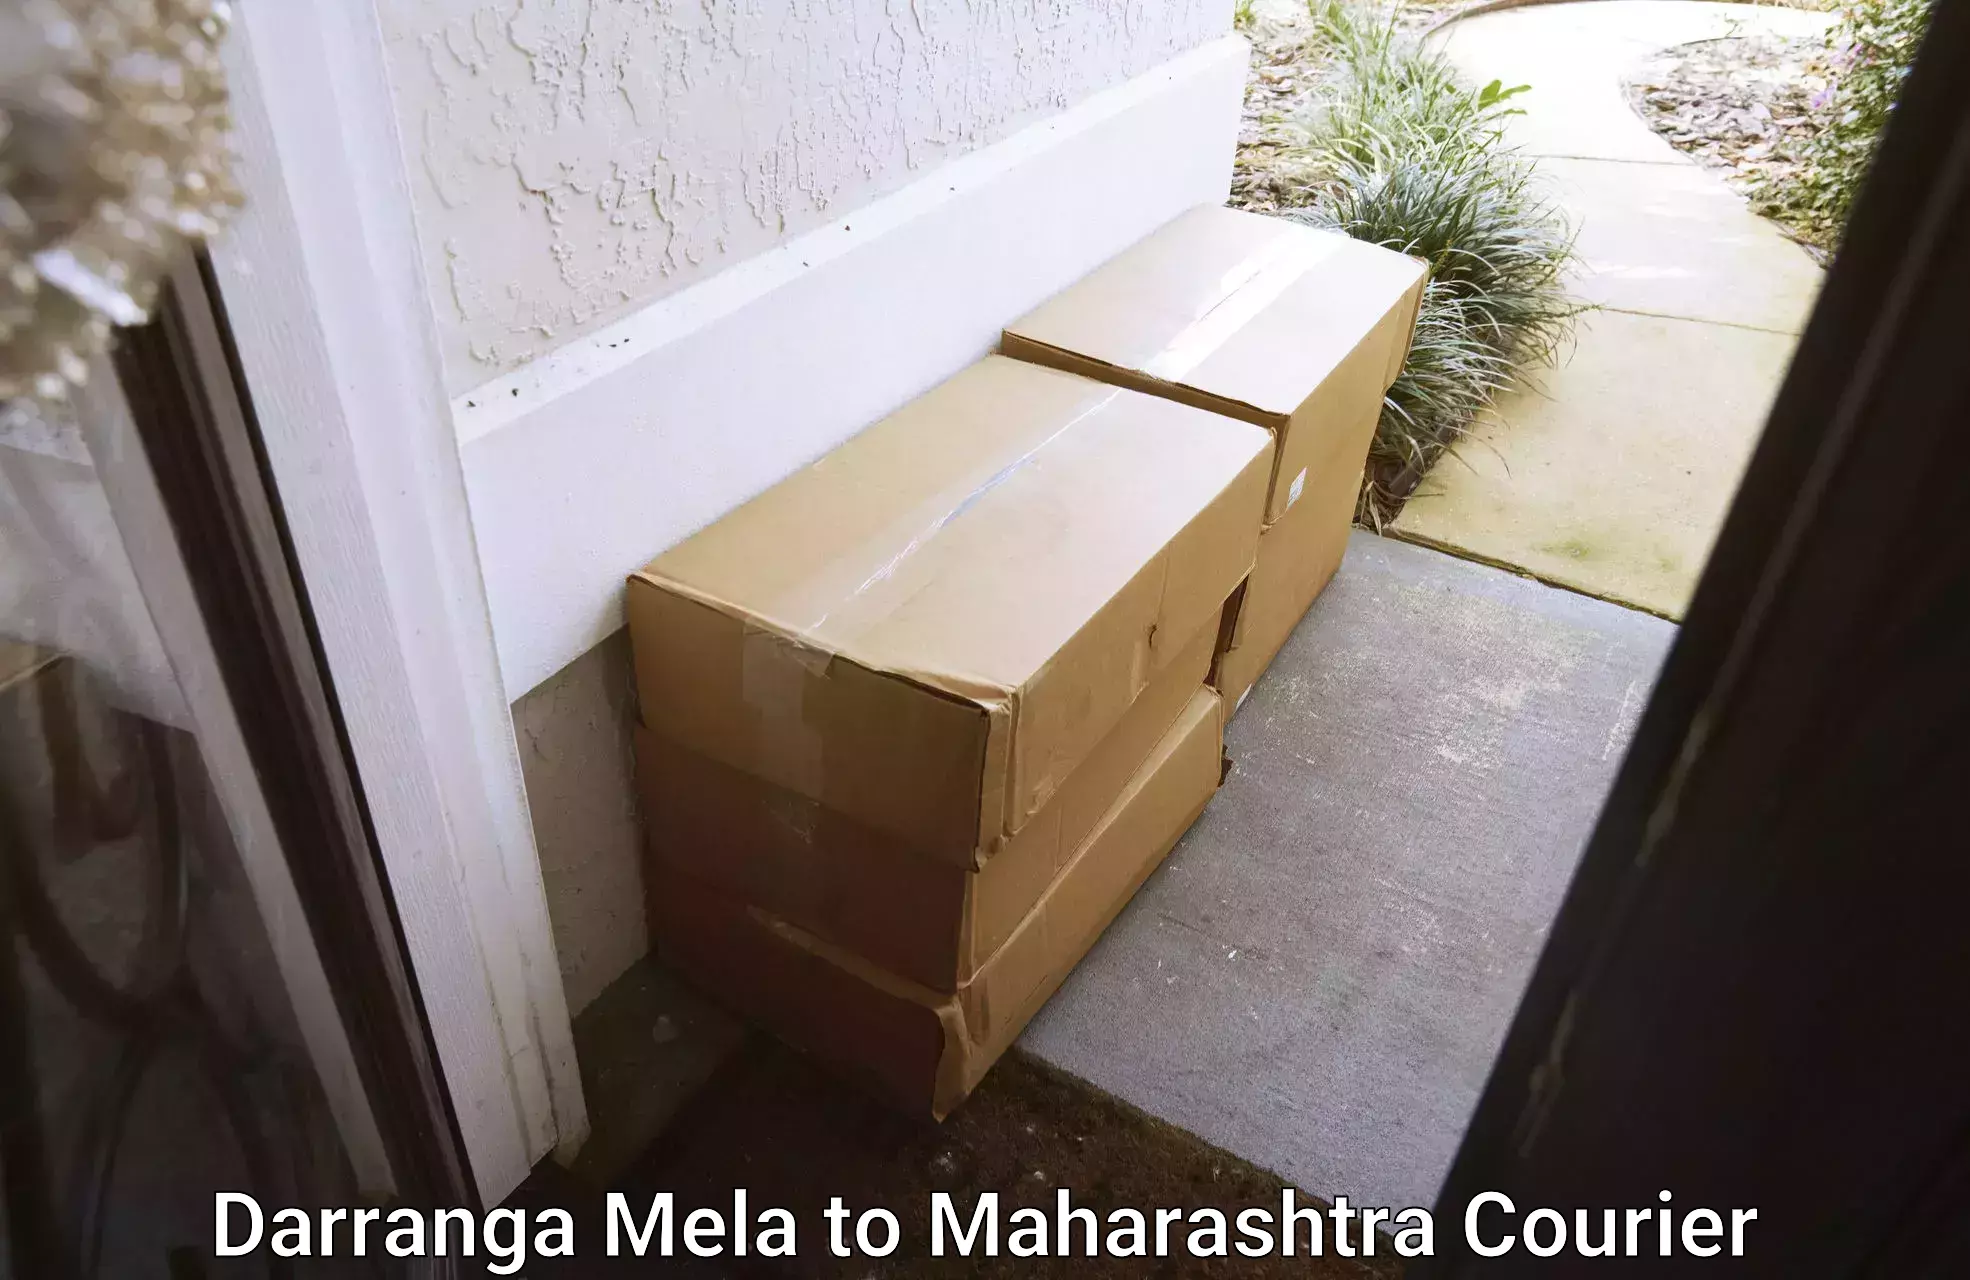 Customer-centric shipping Darranga Mela to Maharashtra